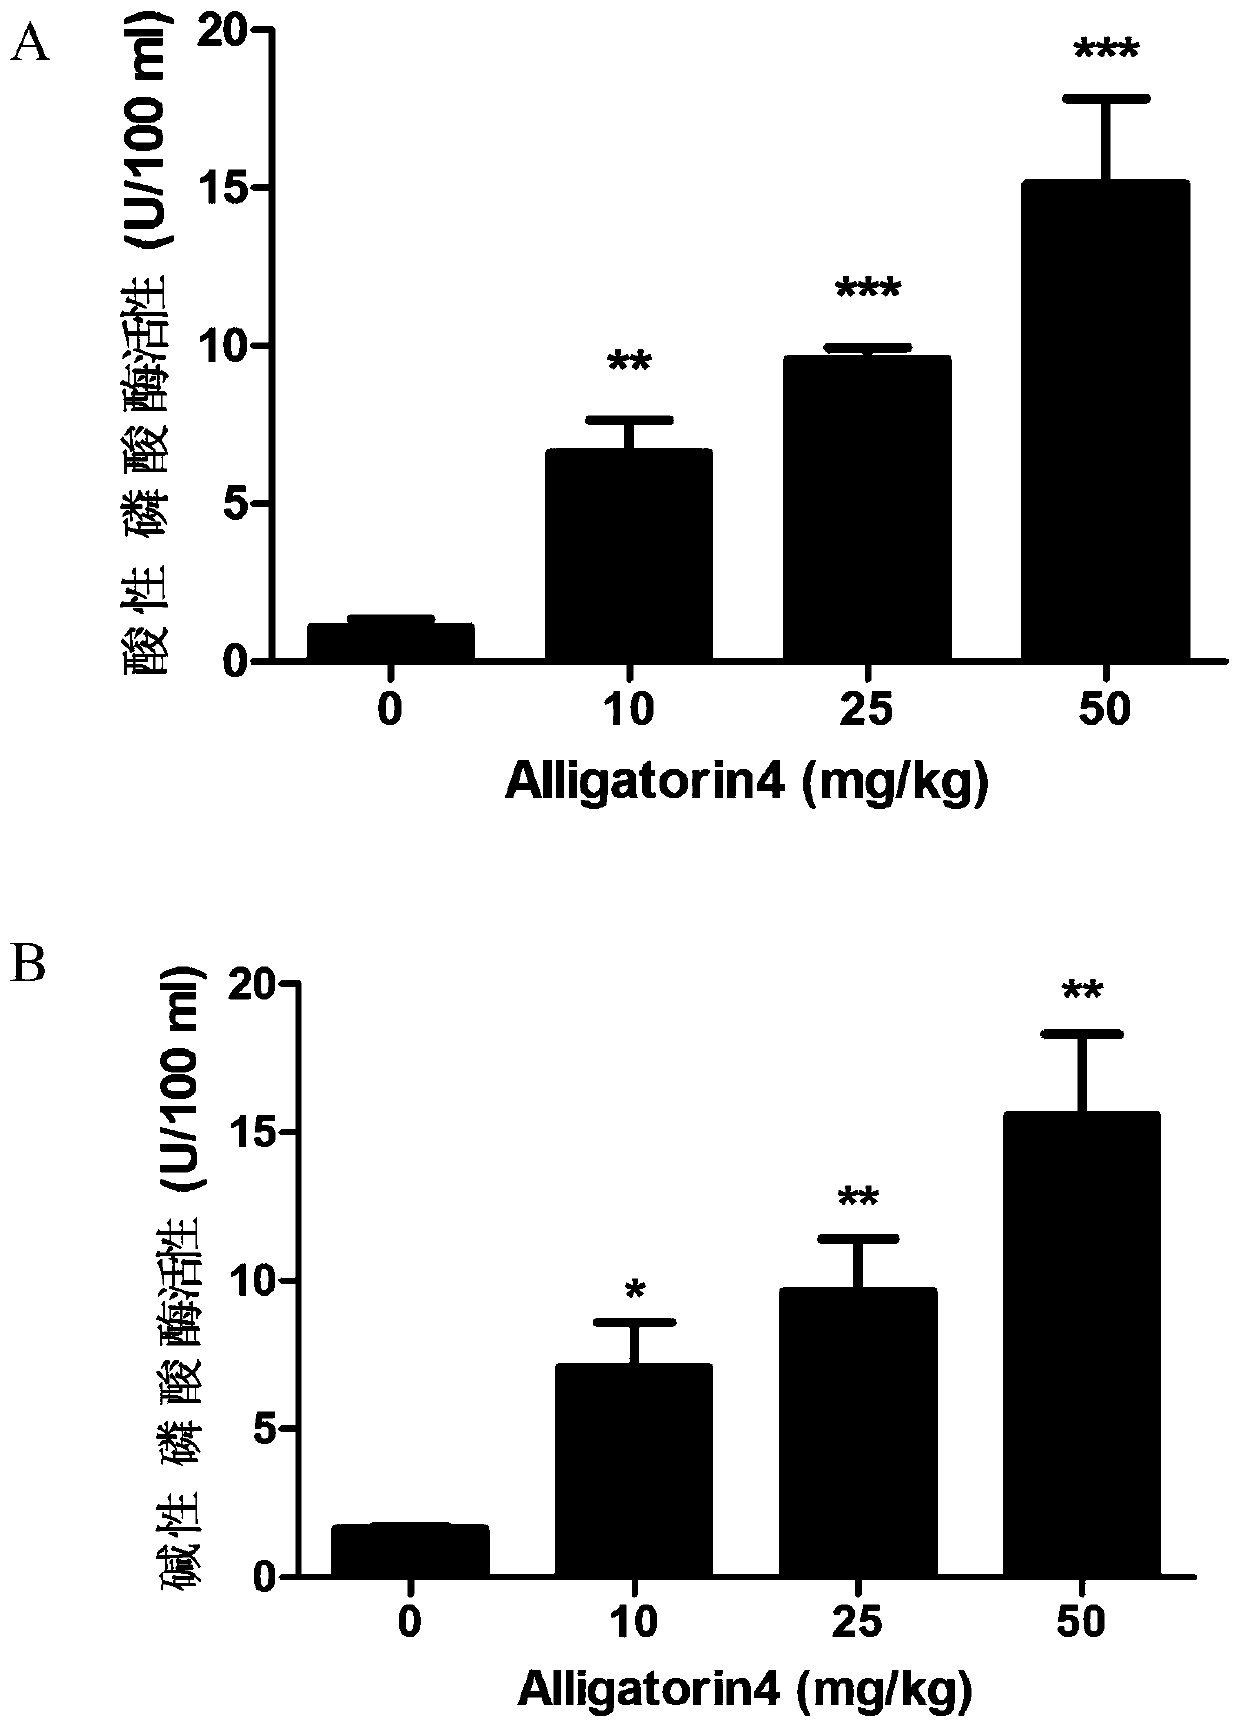 Application of natural host defense peptide alligatorin4